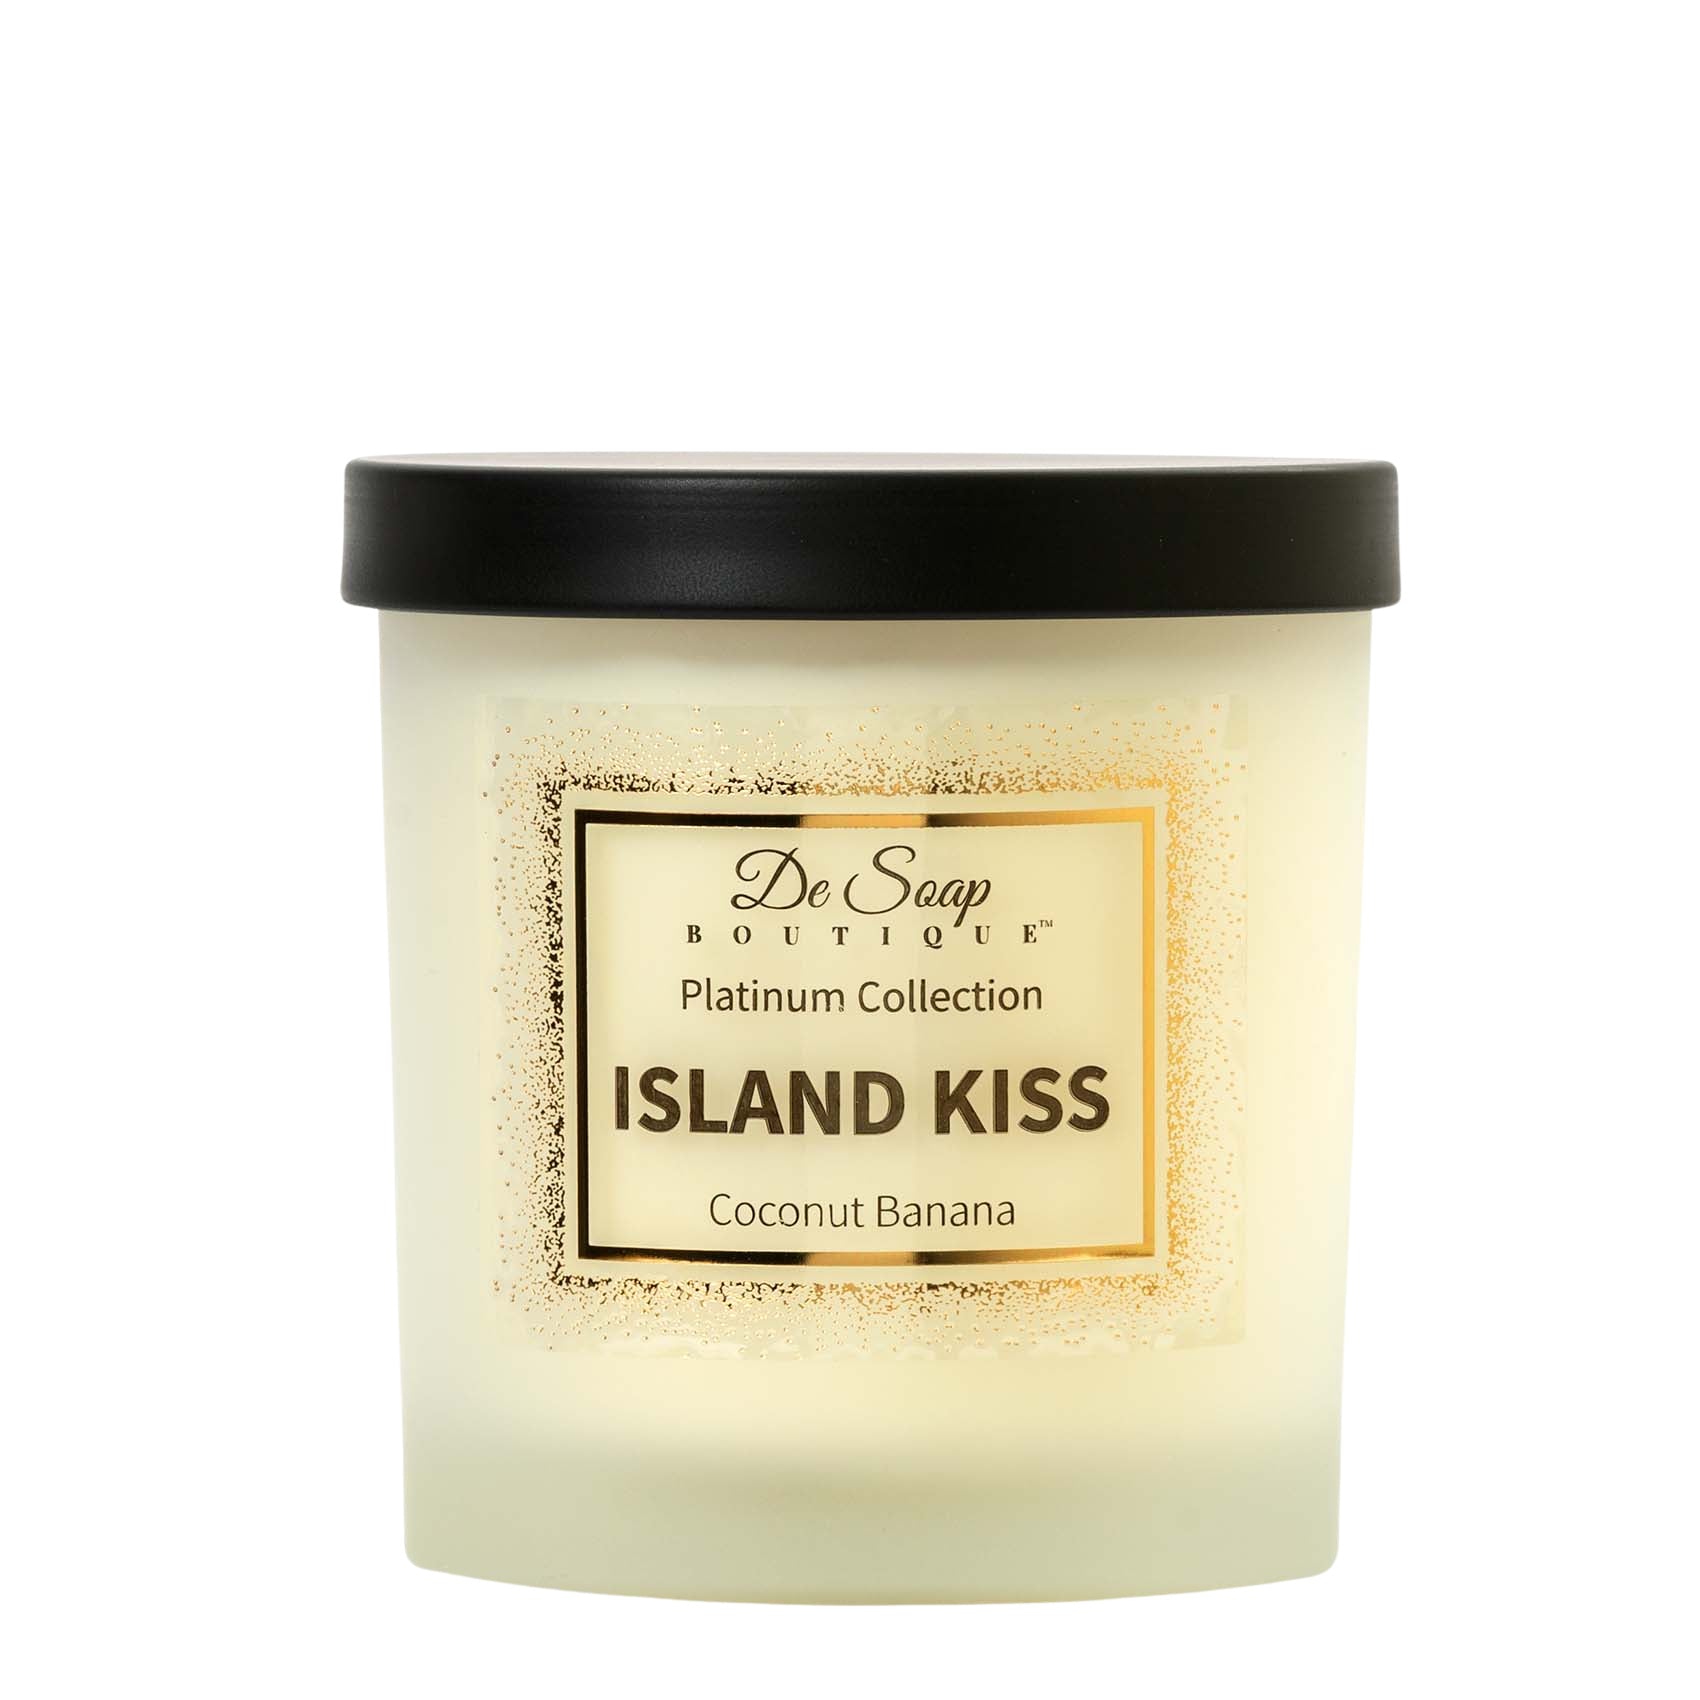 De Soap Boutique ISLAND KISS Hawaiian Coconut Banana Candle 10 oz